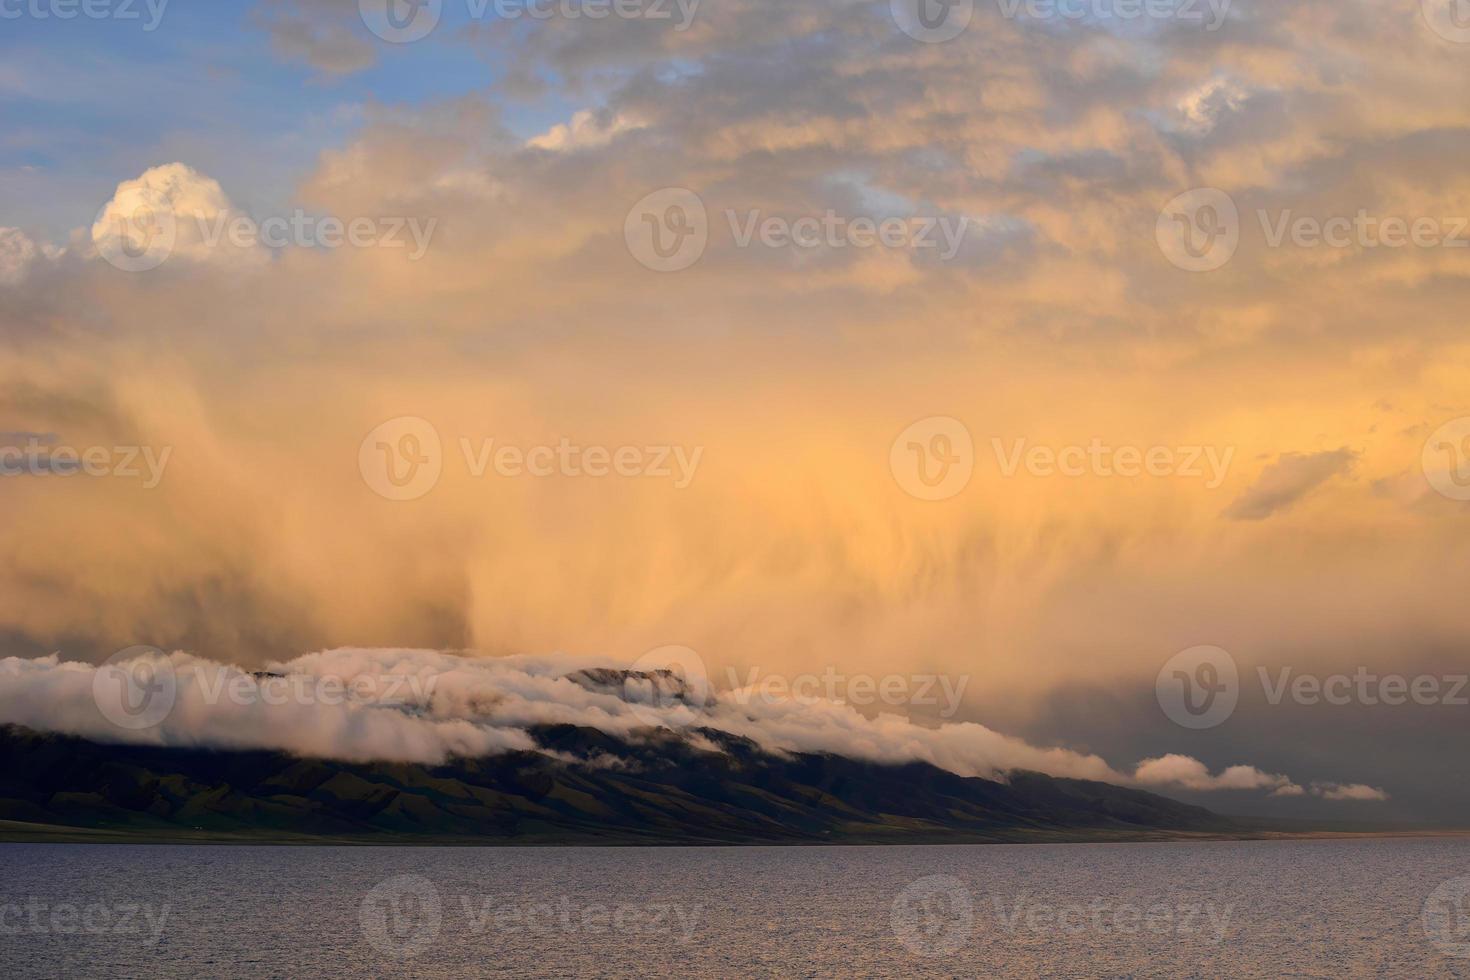 el montañas alrededor marinero lago son brillante debajo el nubes a puesta de sol foto